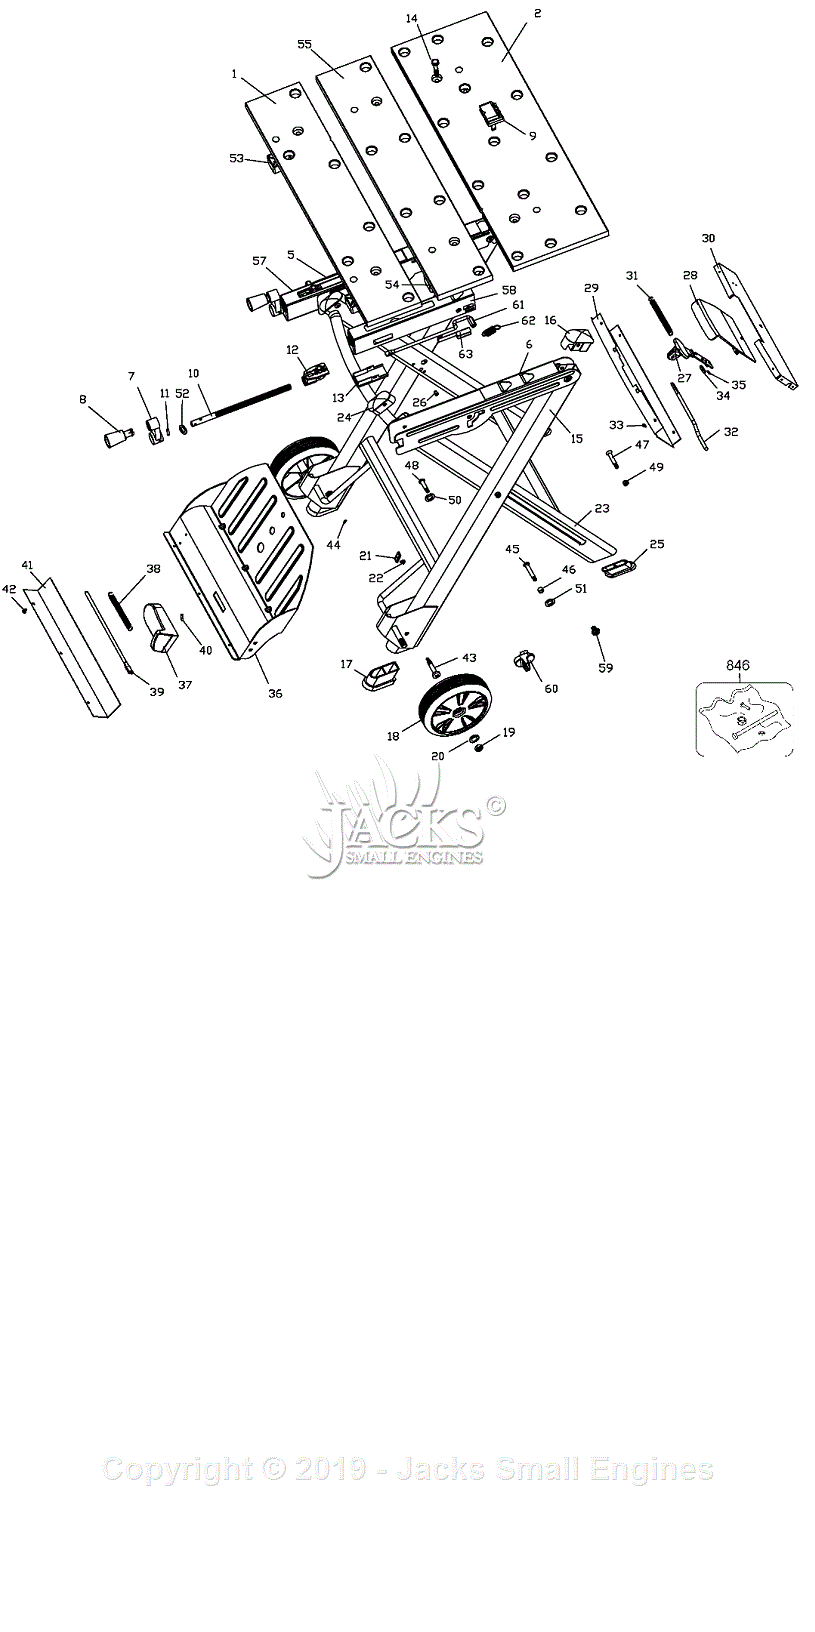 Black & Decker WM525 Parts Diagram for Workmate